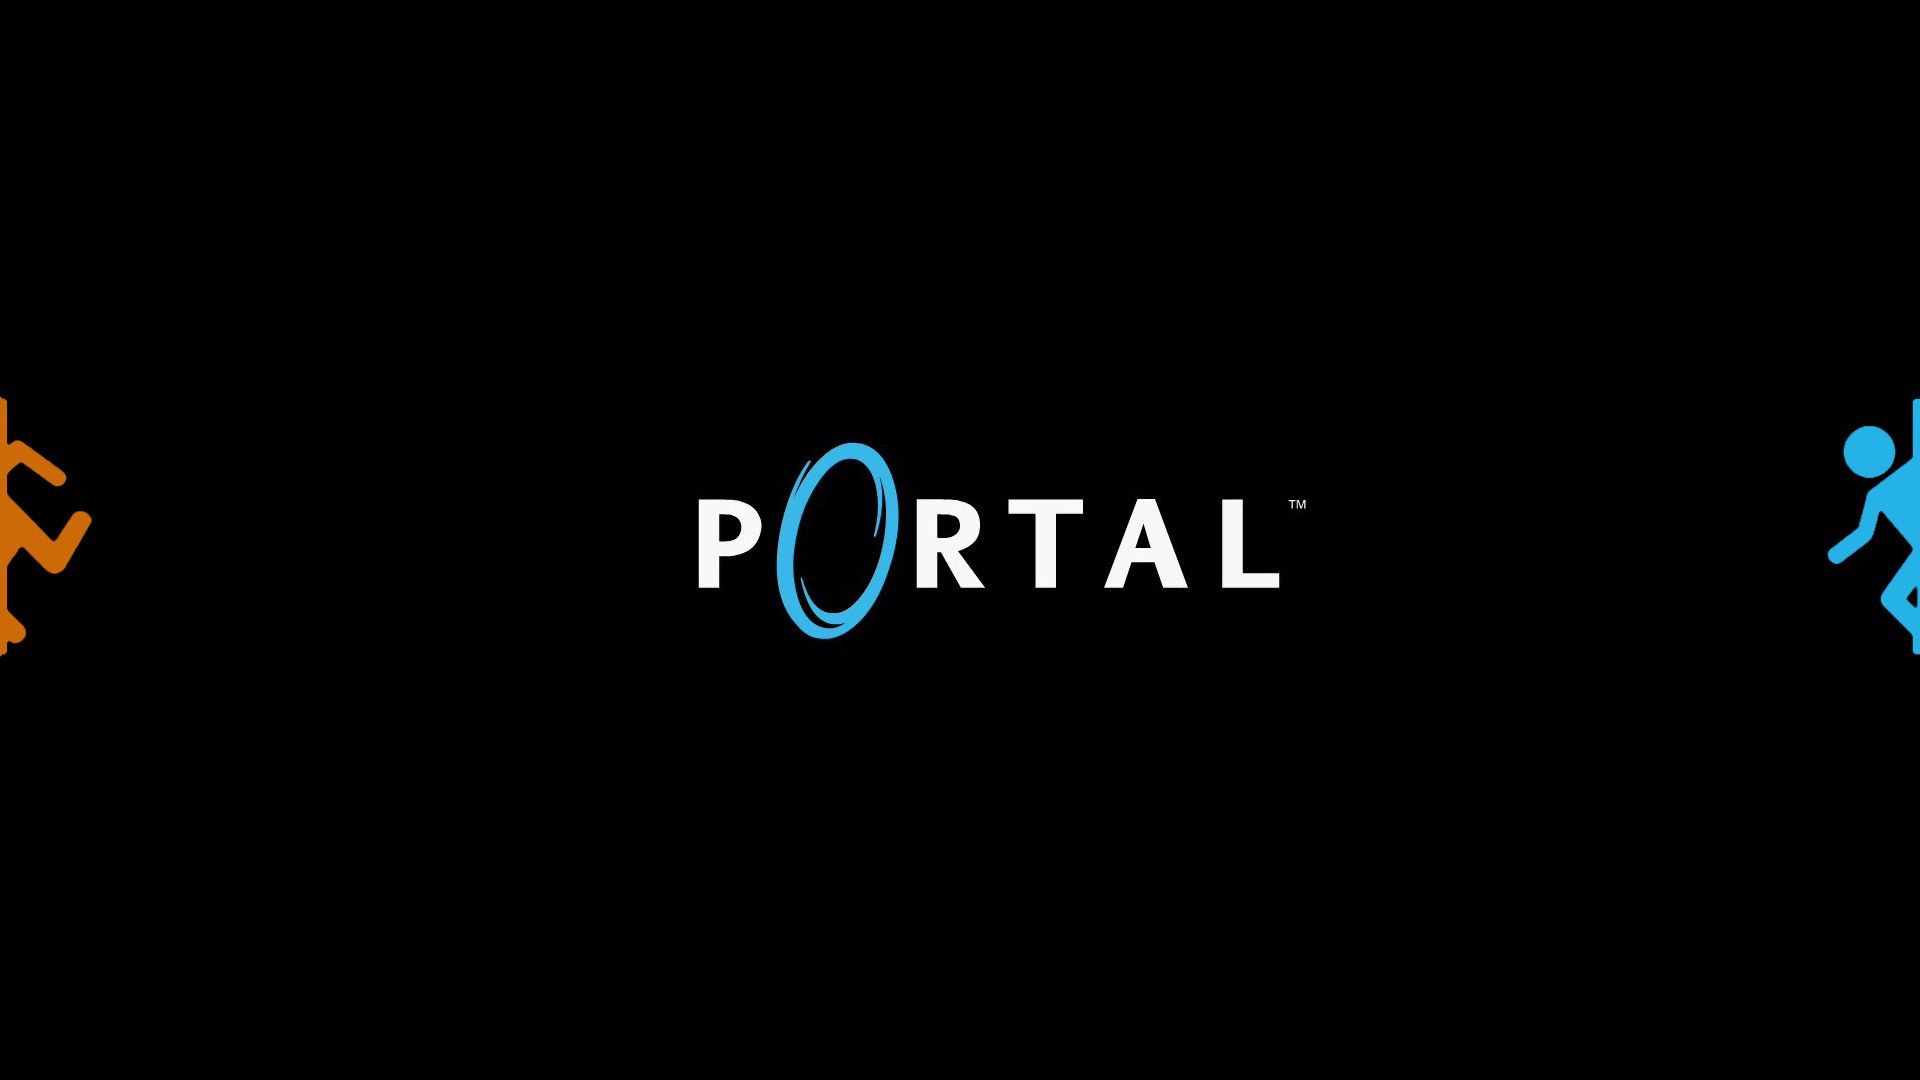 Video Game Portal 1920x1080